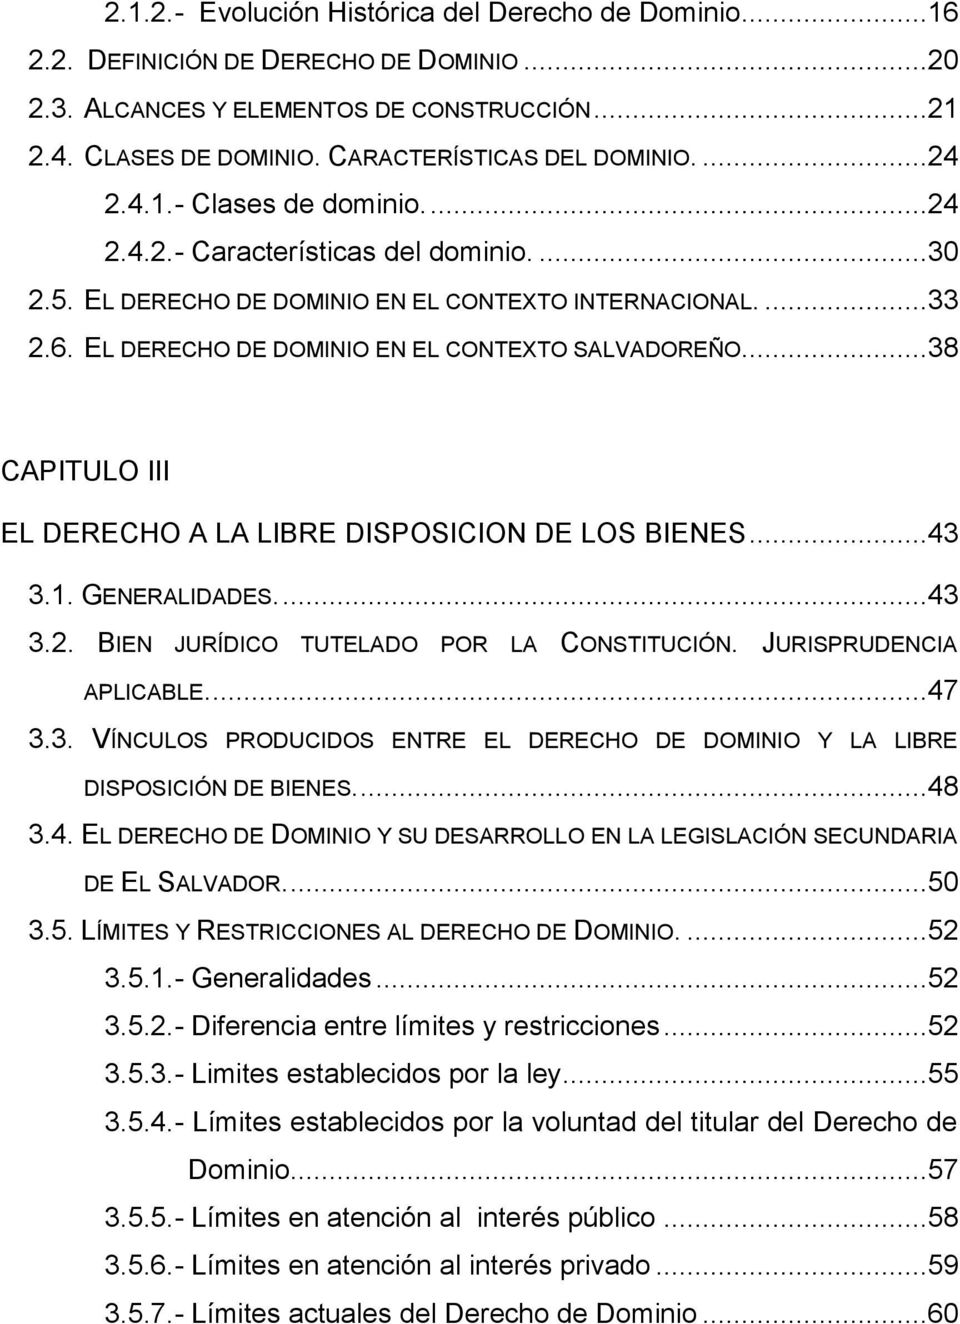 ..38 CAPITULO III EL DERECHO A LA LIBRE DISPOSICION DE LOS BIENES...43 3.1. GENERALIDADES....43 3.2. BIEN JURÍDICO TUTELADO POR LA CONSTITUCIÓN. JURISPRUDENCIA APLICABLE....47 3.3. VÍNCULOS PRODUCIDOS ENTRE EL DERECHO DE DOMINIO Y LA LIBRE DISPOSICIÓN DE BIENES.